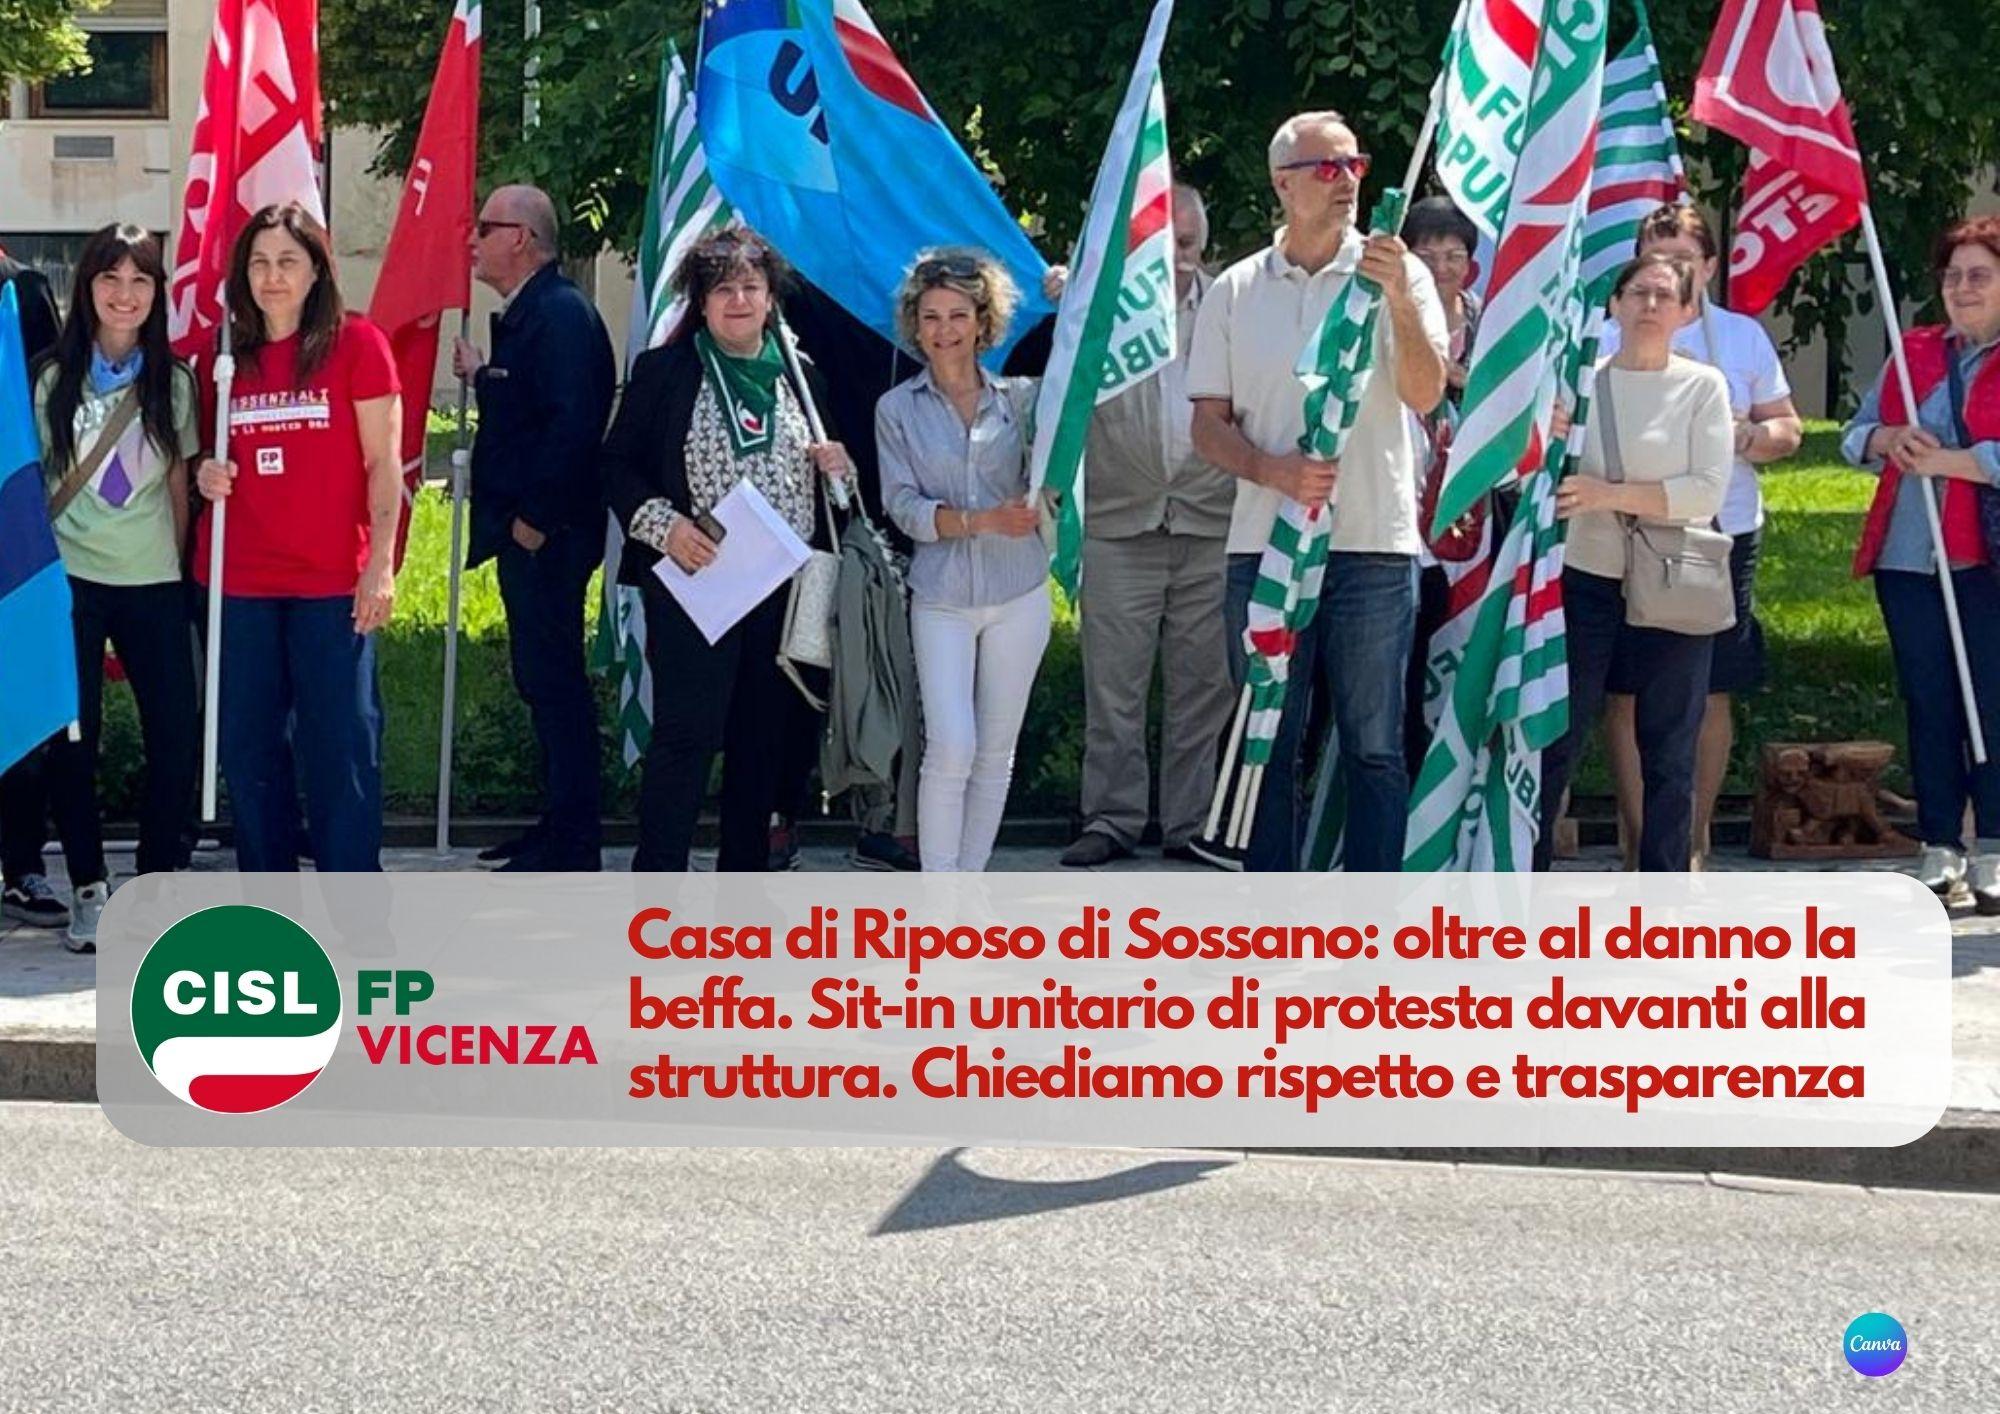 CISL FP Vicenza. Casa di Riposo di Sossano: oltre al danno la beffa. Sit-in unitario di protesta